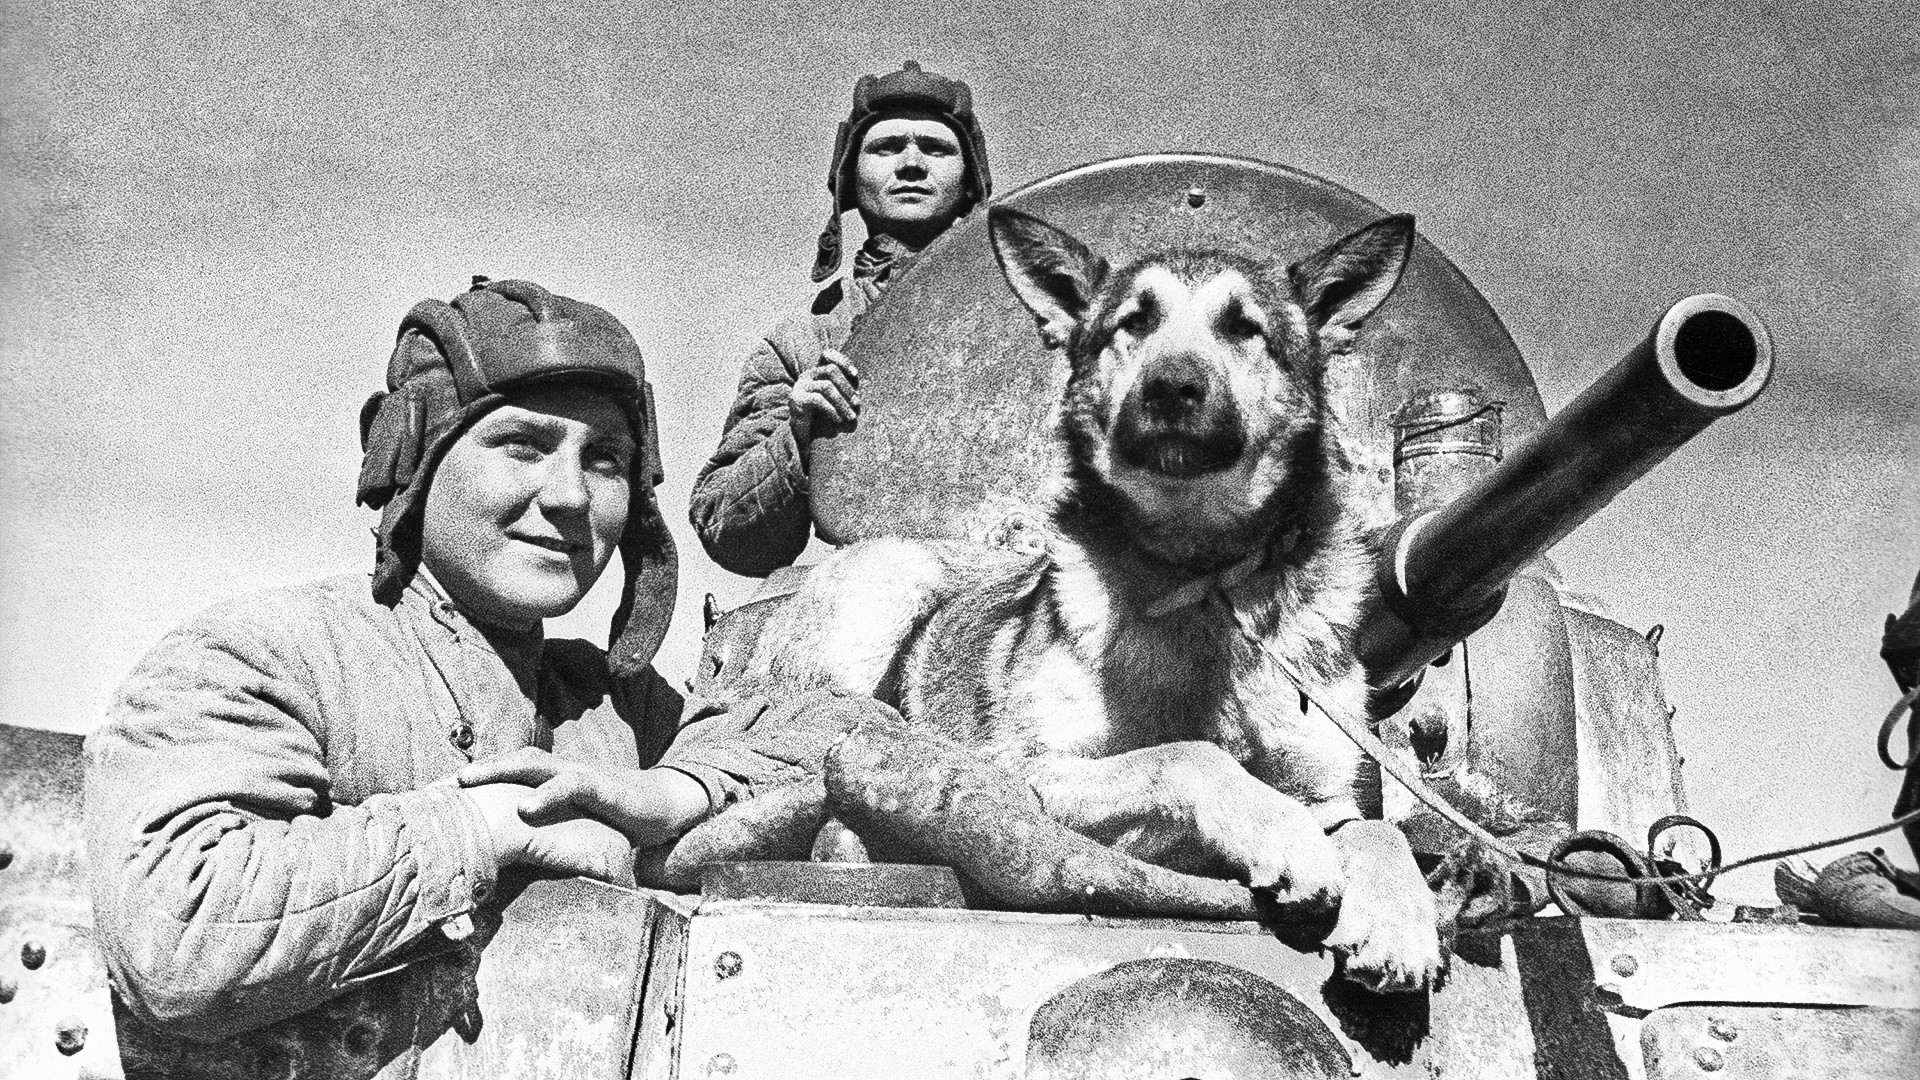 Tripulação do blindado BA-10 sovético incluía cães, na Segunda Guerra Mundial